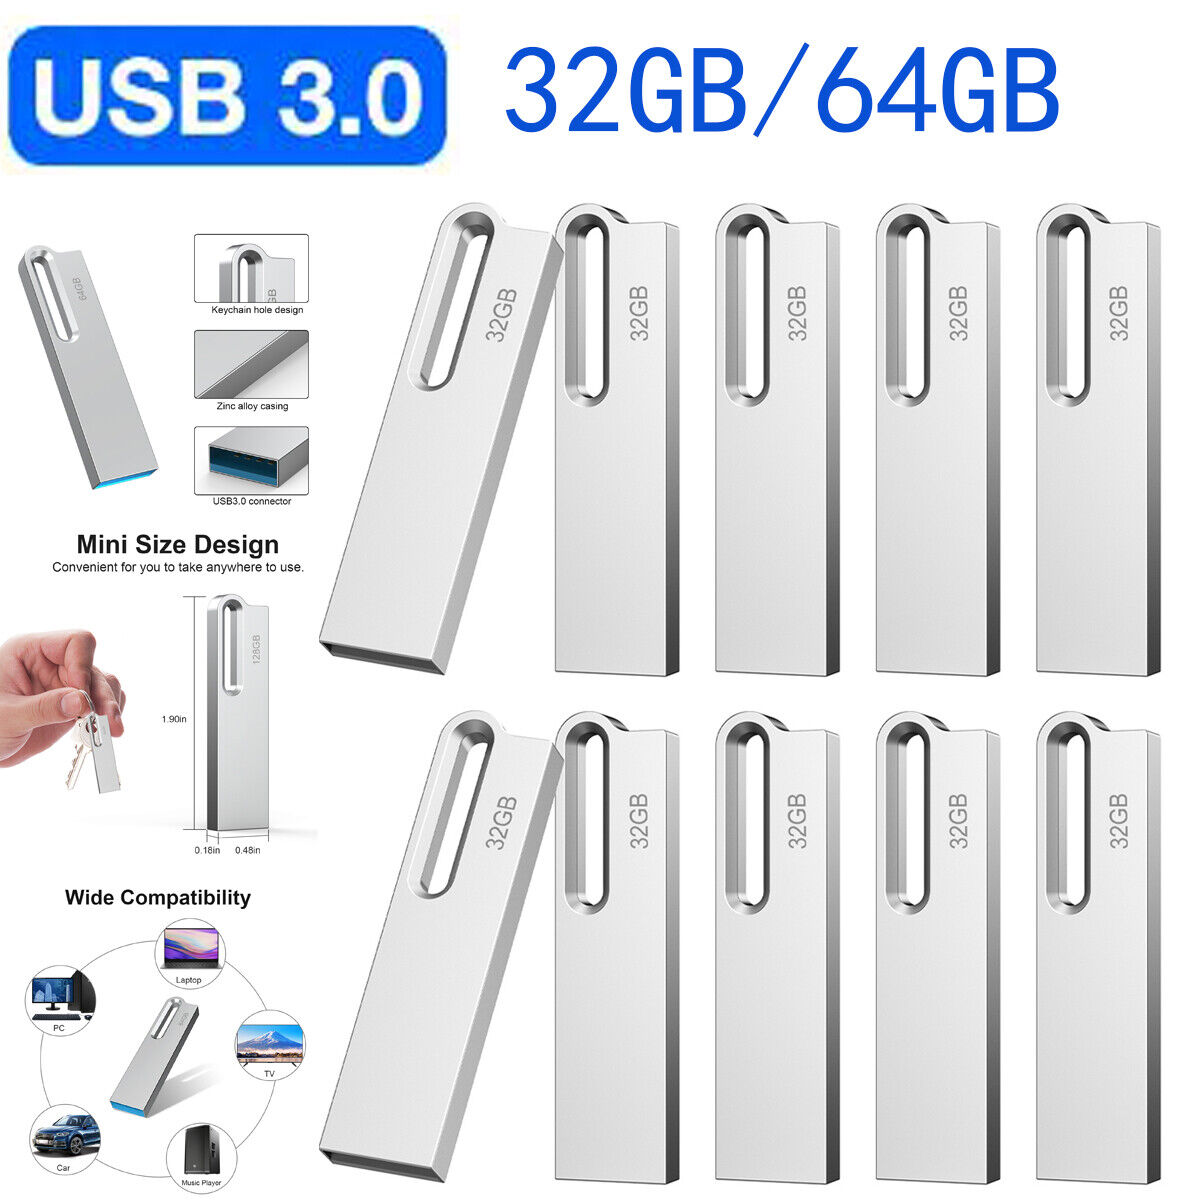 USB 3.0 Flash Drive 32GB 64GB Lot Pack Memory Stick Metal Waterproof Pen Drive 